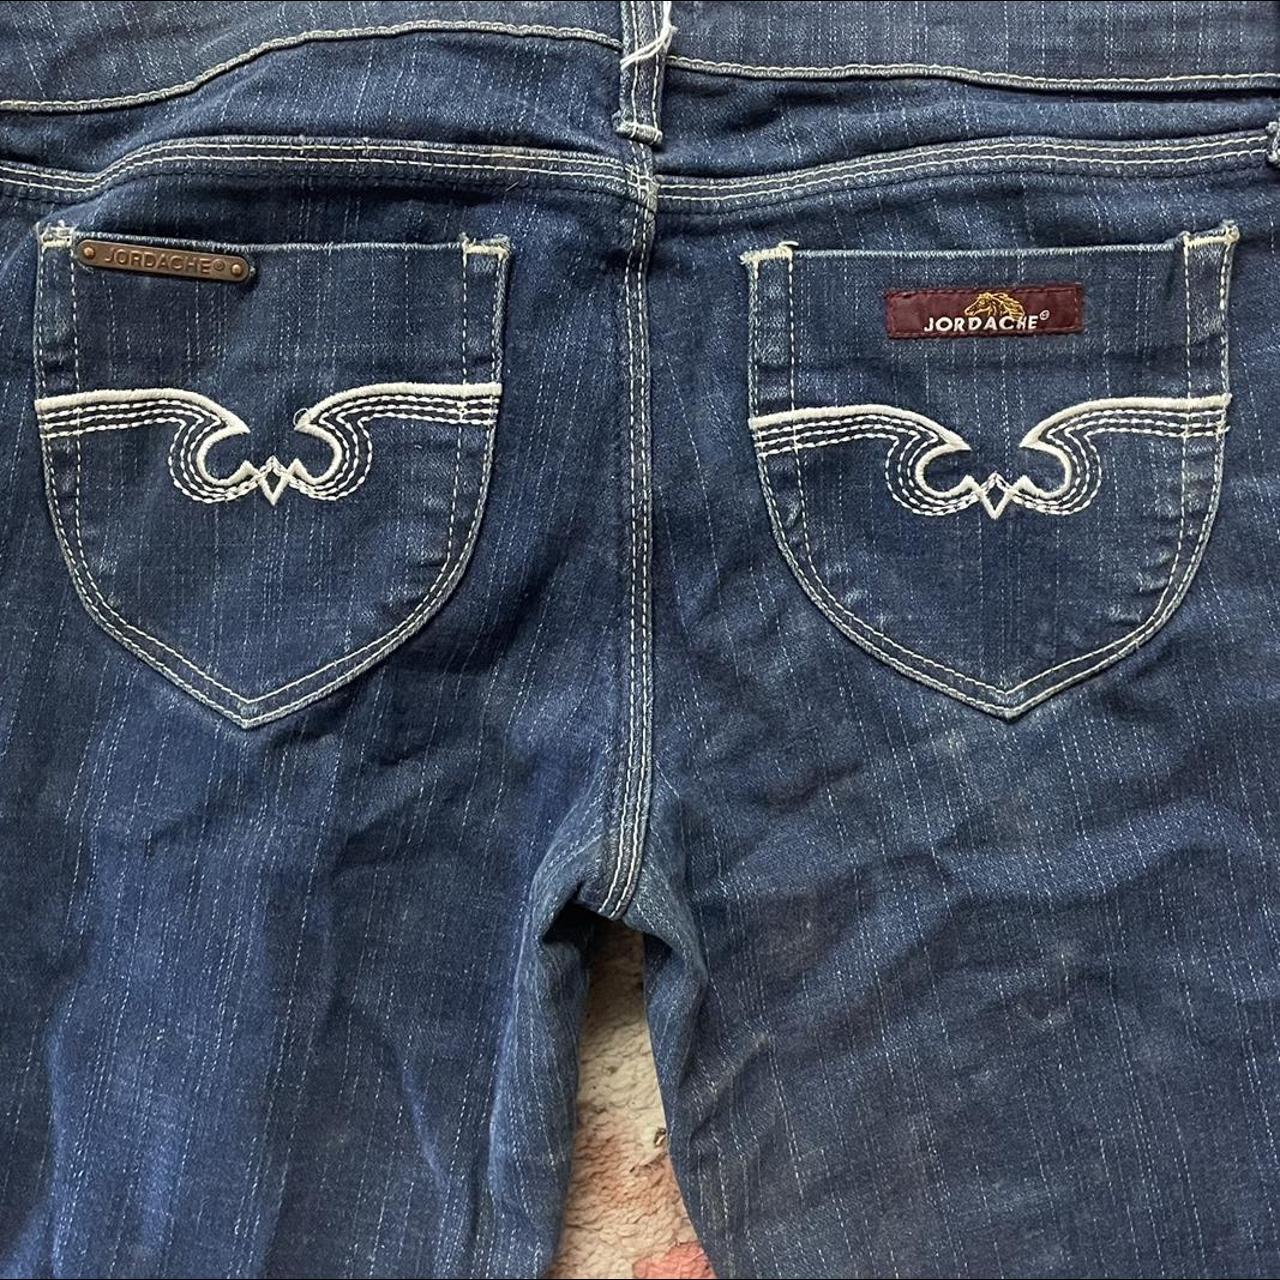 jordache jeans - Depop